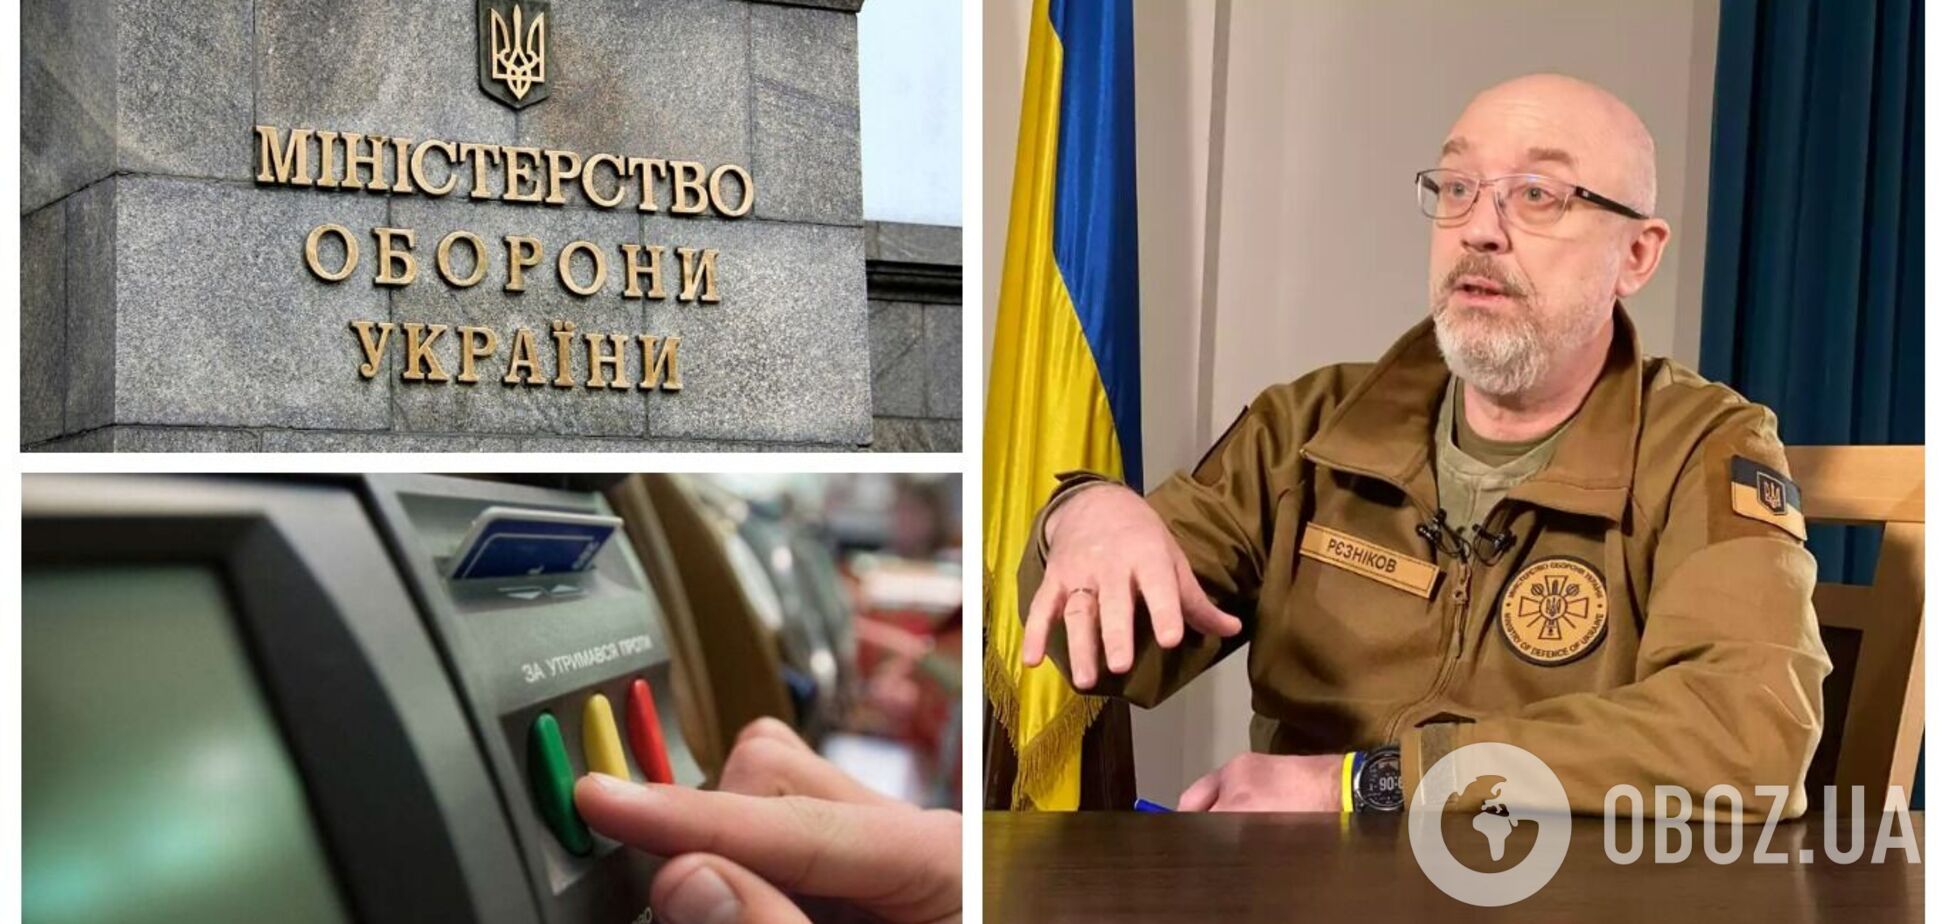 Верховная Рада поддержала отставку Резникова с поста министра обороны Украины